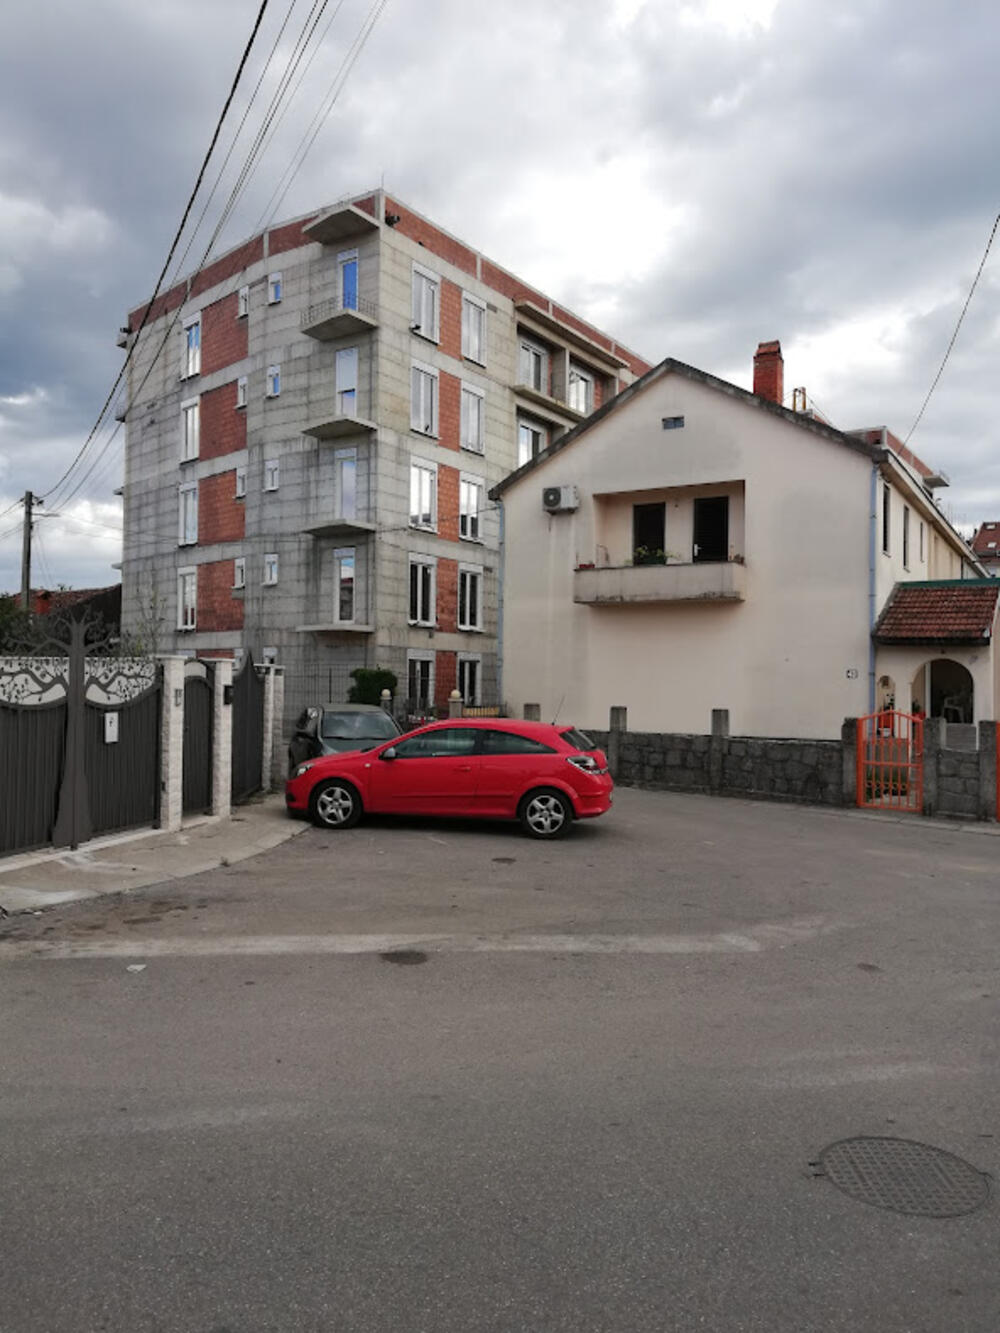 Intervencija u zahvatu UP “Stara Varoš, dio zone A”, Izmjene i dopune – Ulica Ljubović (Ljubovićka ulica)